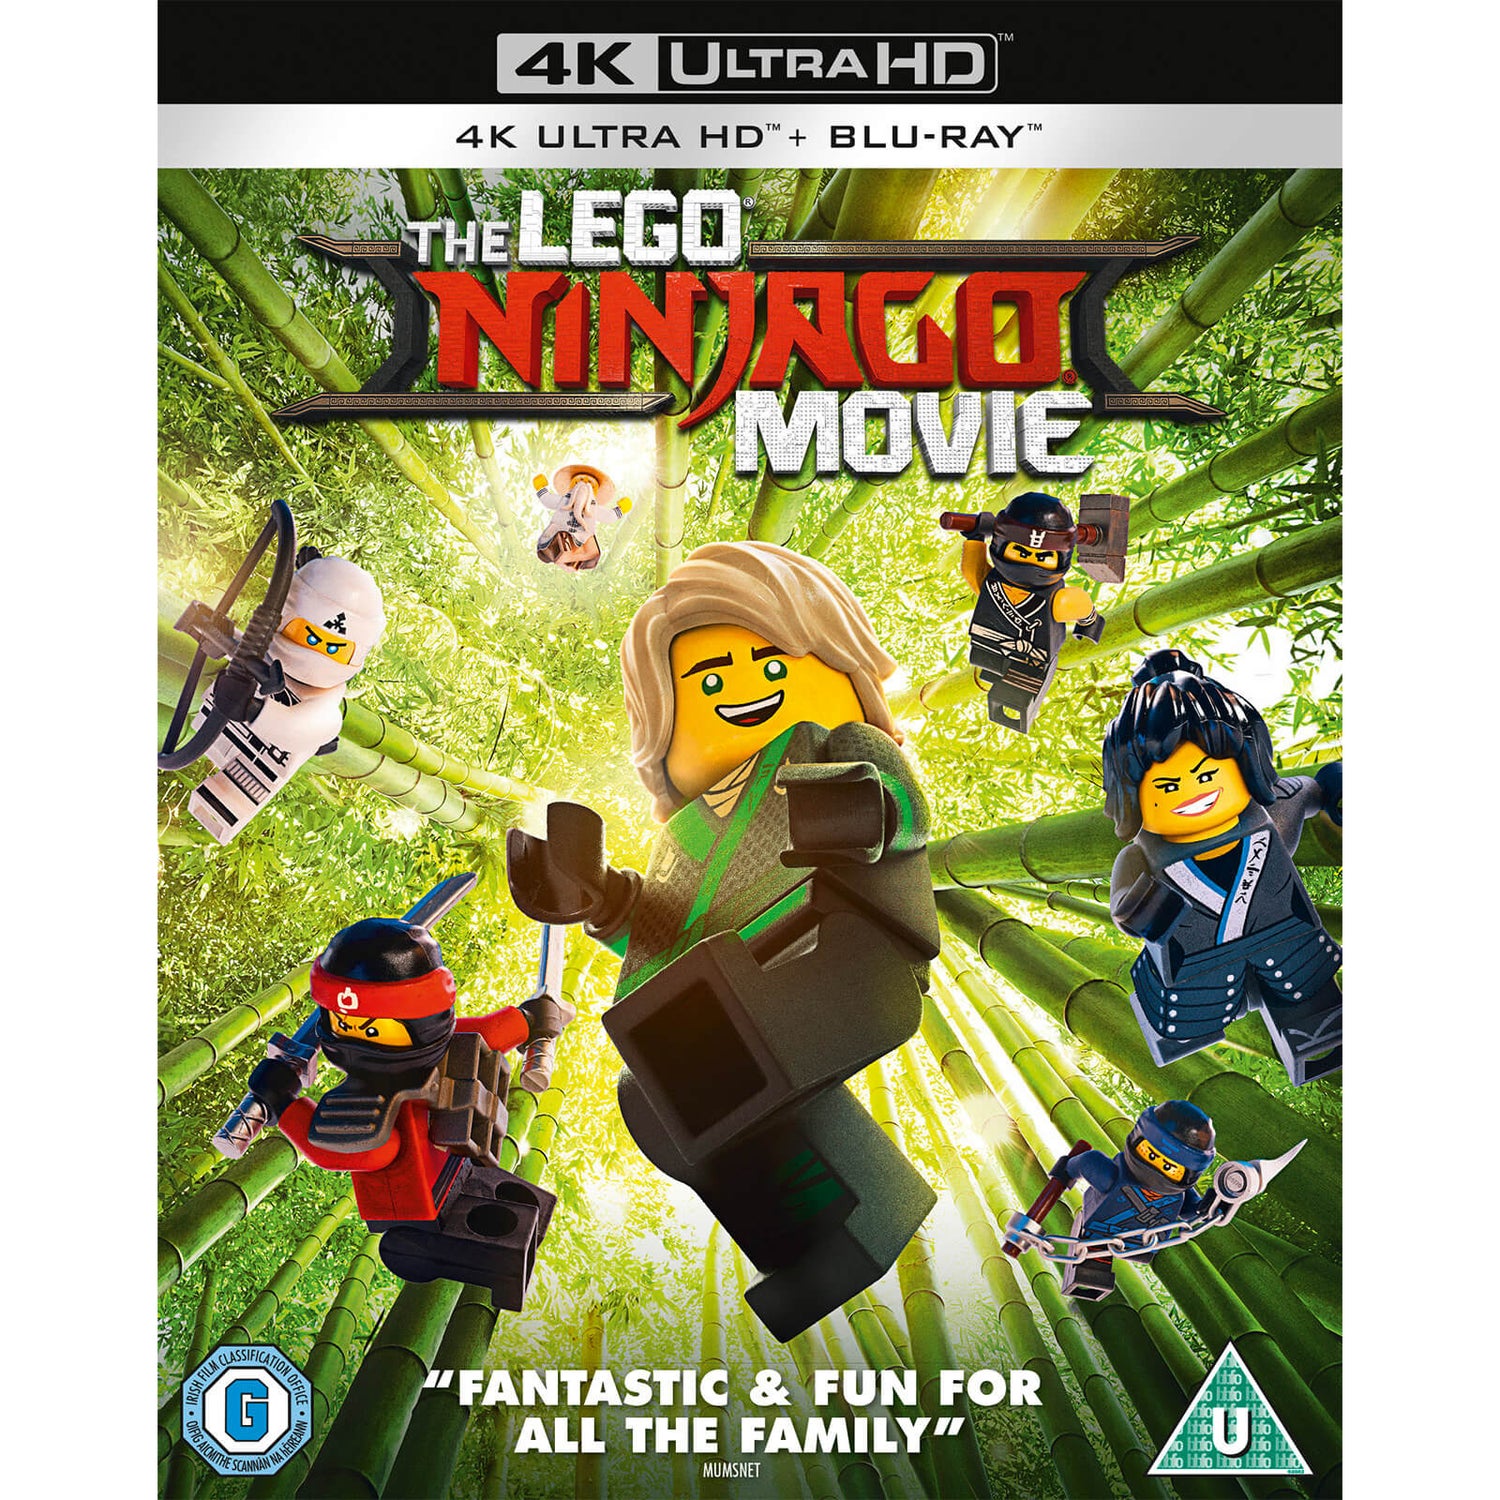 The LEGO Ninjago Movie - 4K Ultra HD